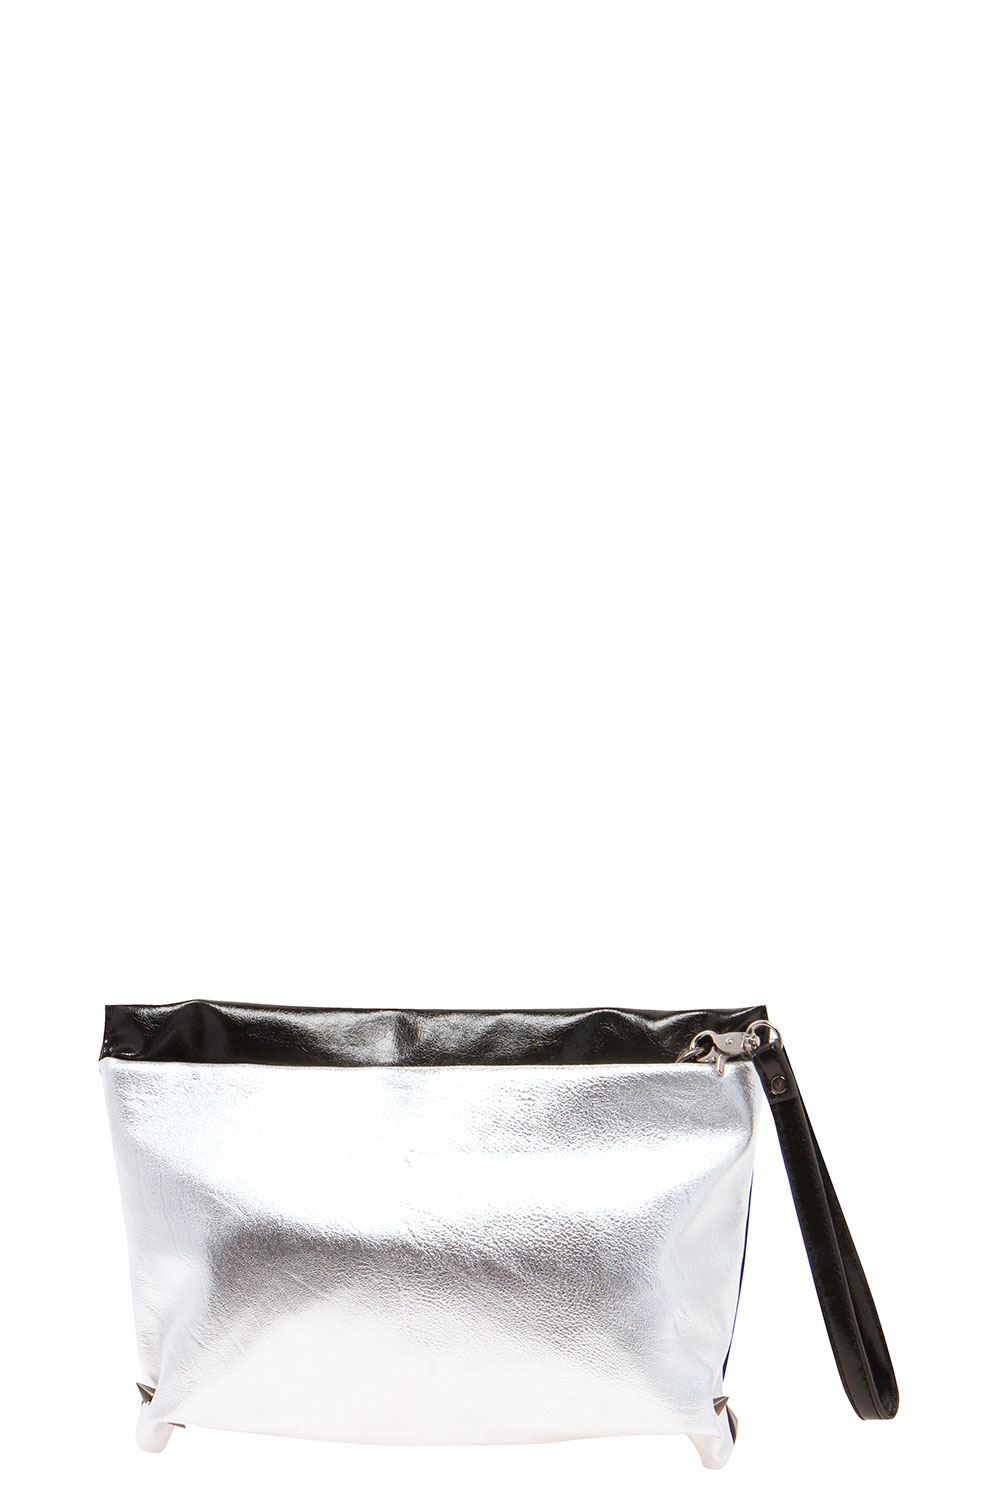 Tillie Pocket Front Clutch Bag - silver,